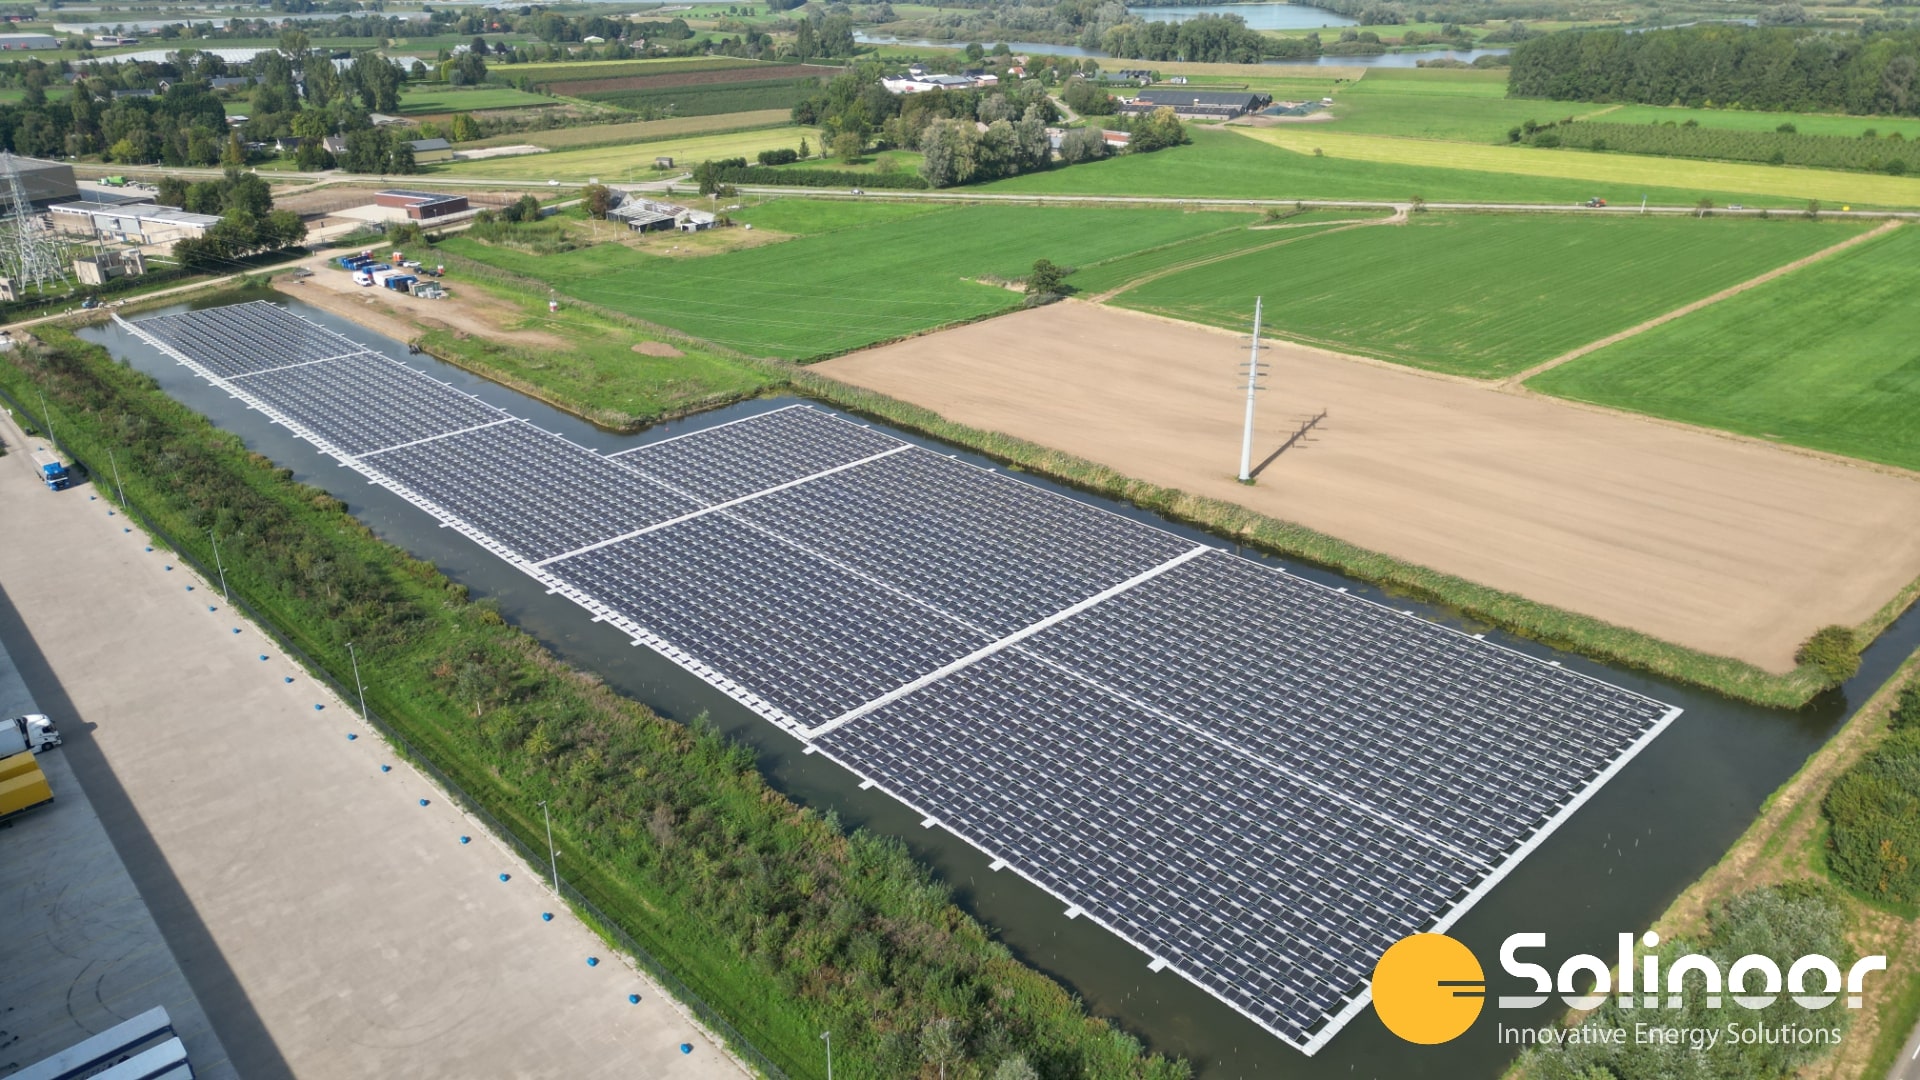 Solinoor drijvend zonnepark Zaltbommel in Gelderland - bovenaanzicht met groen